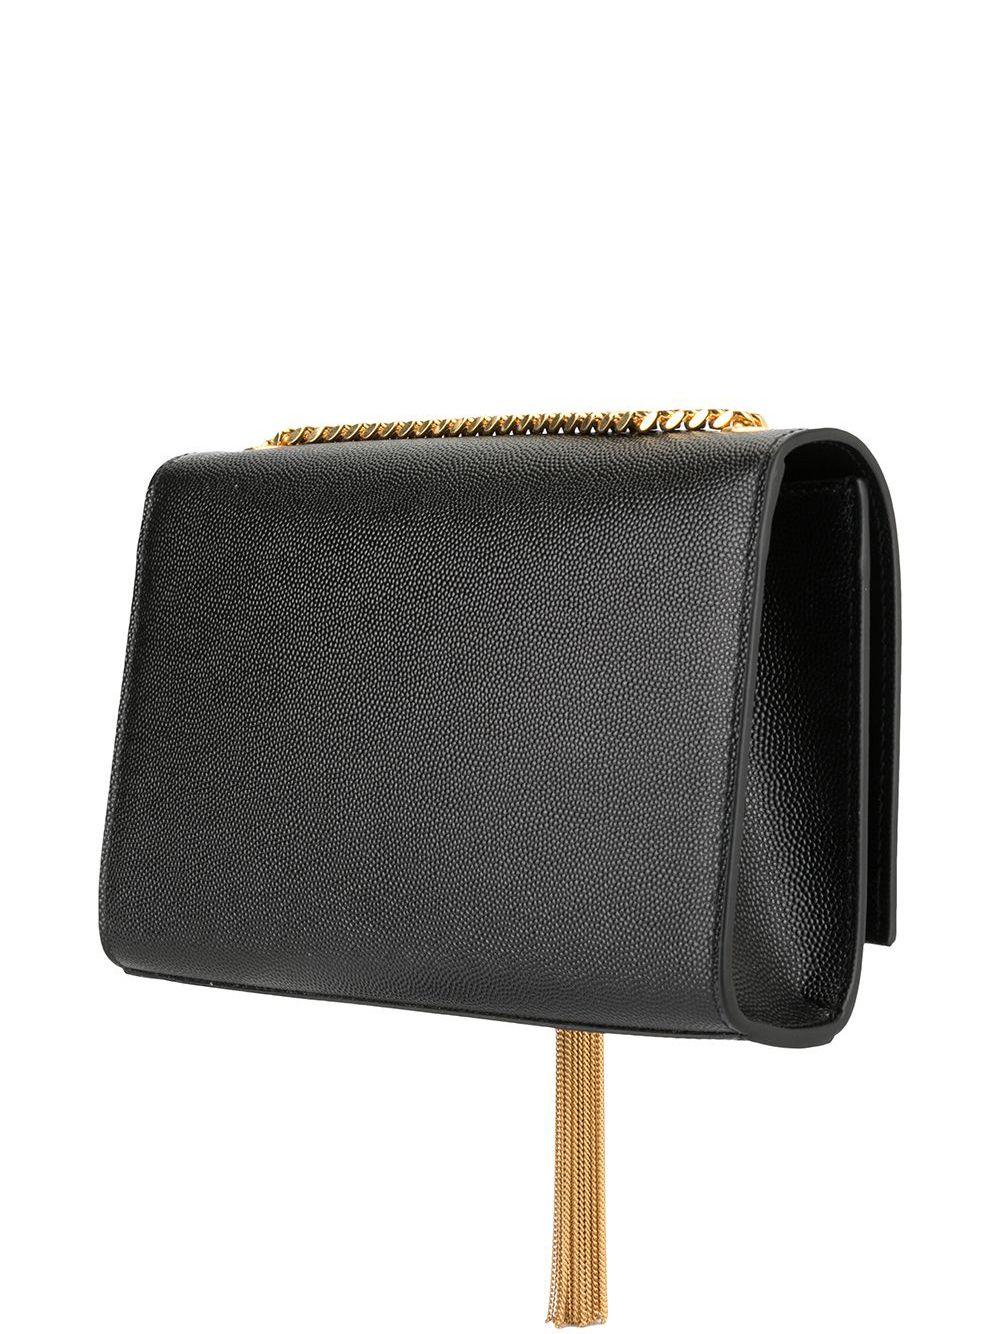 SAINT LAURENT Luxurious Black Leather Shoulder Handbag for Women